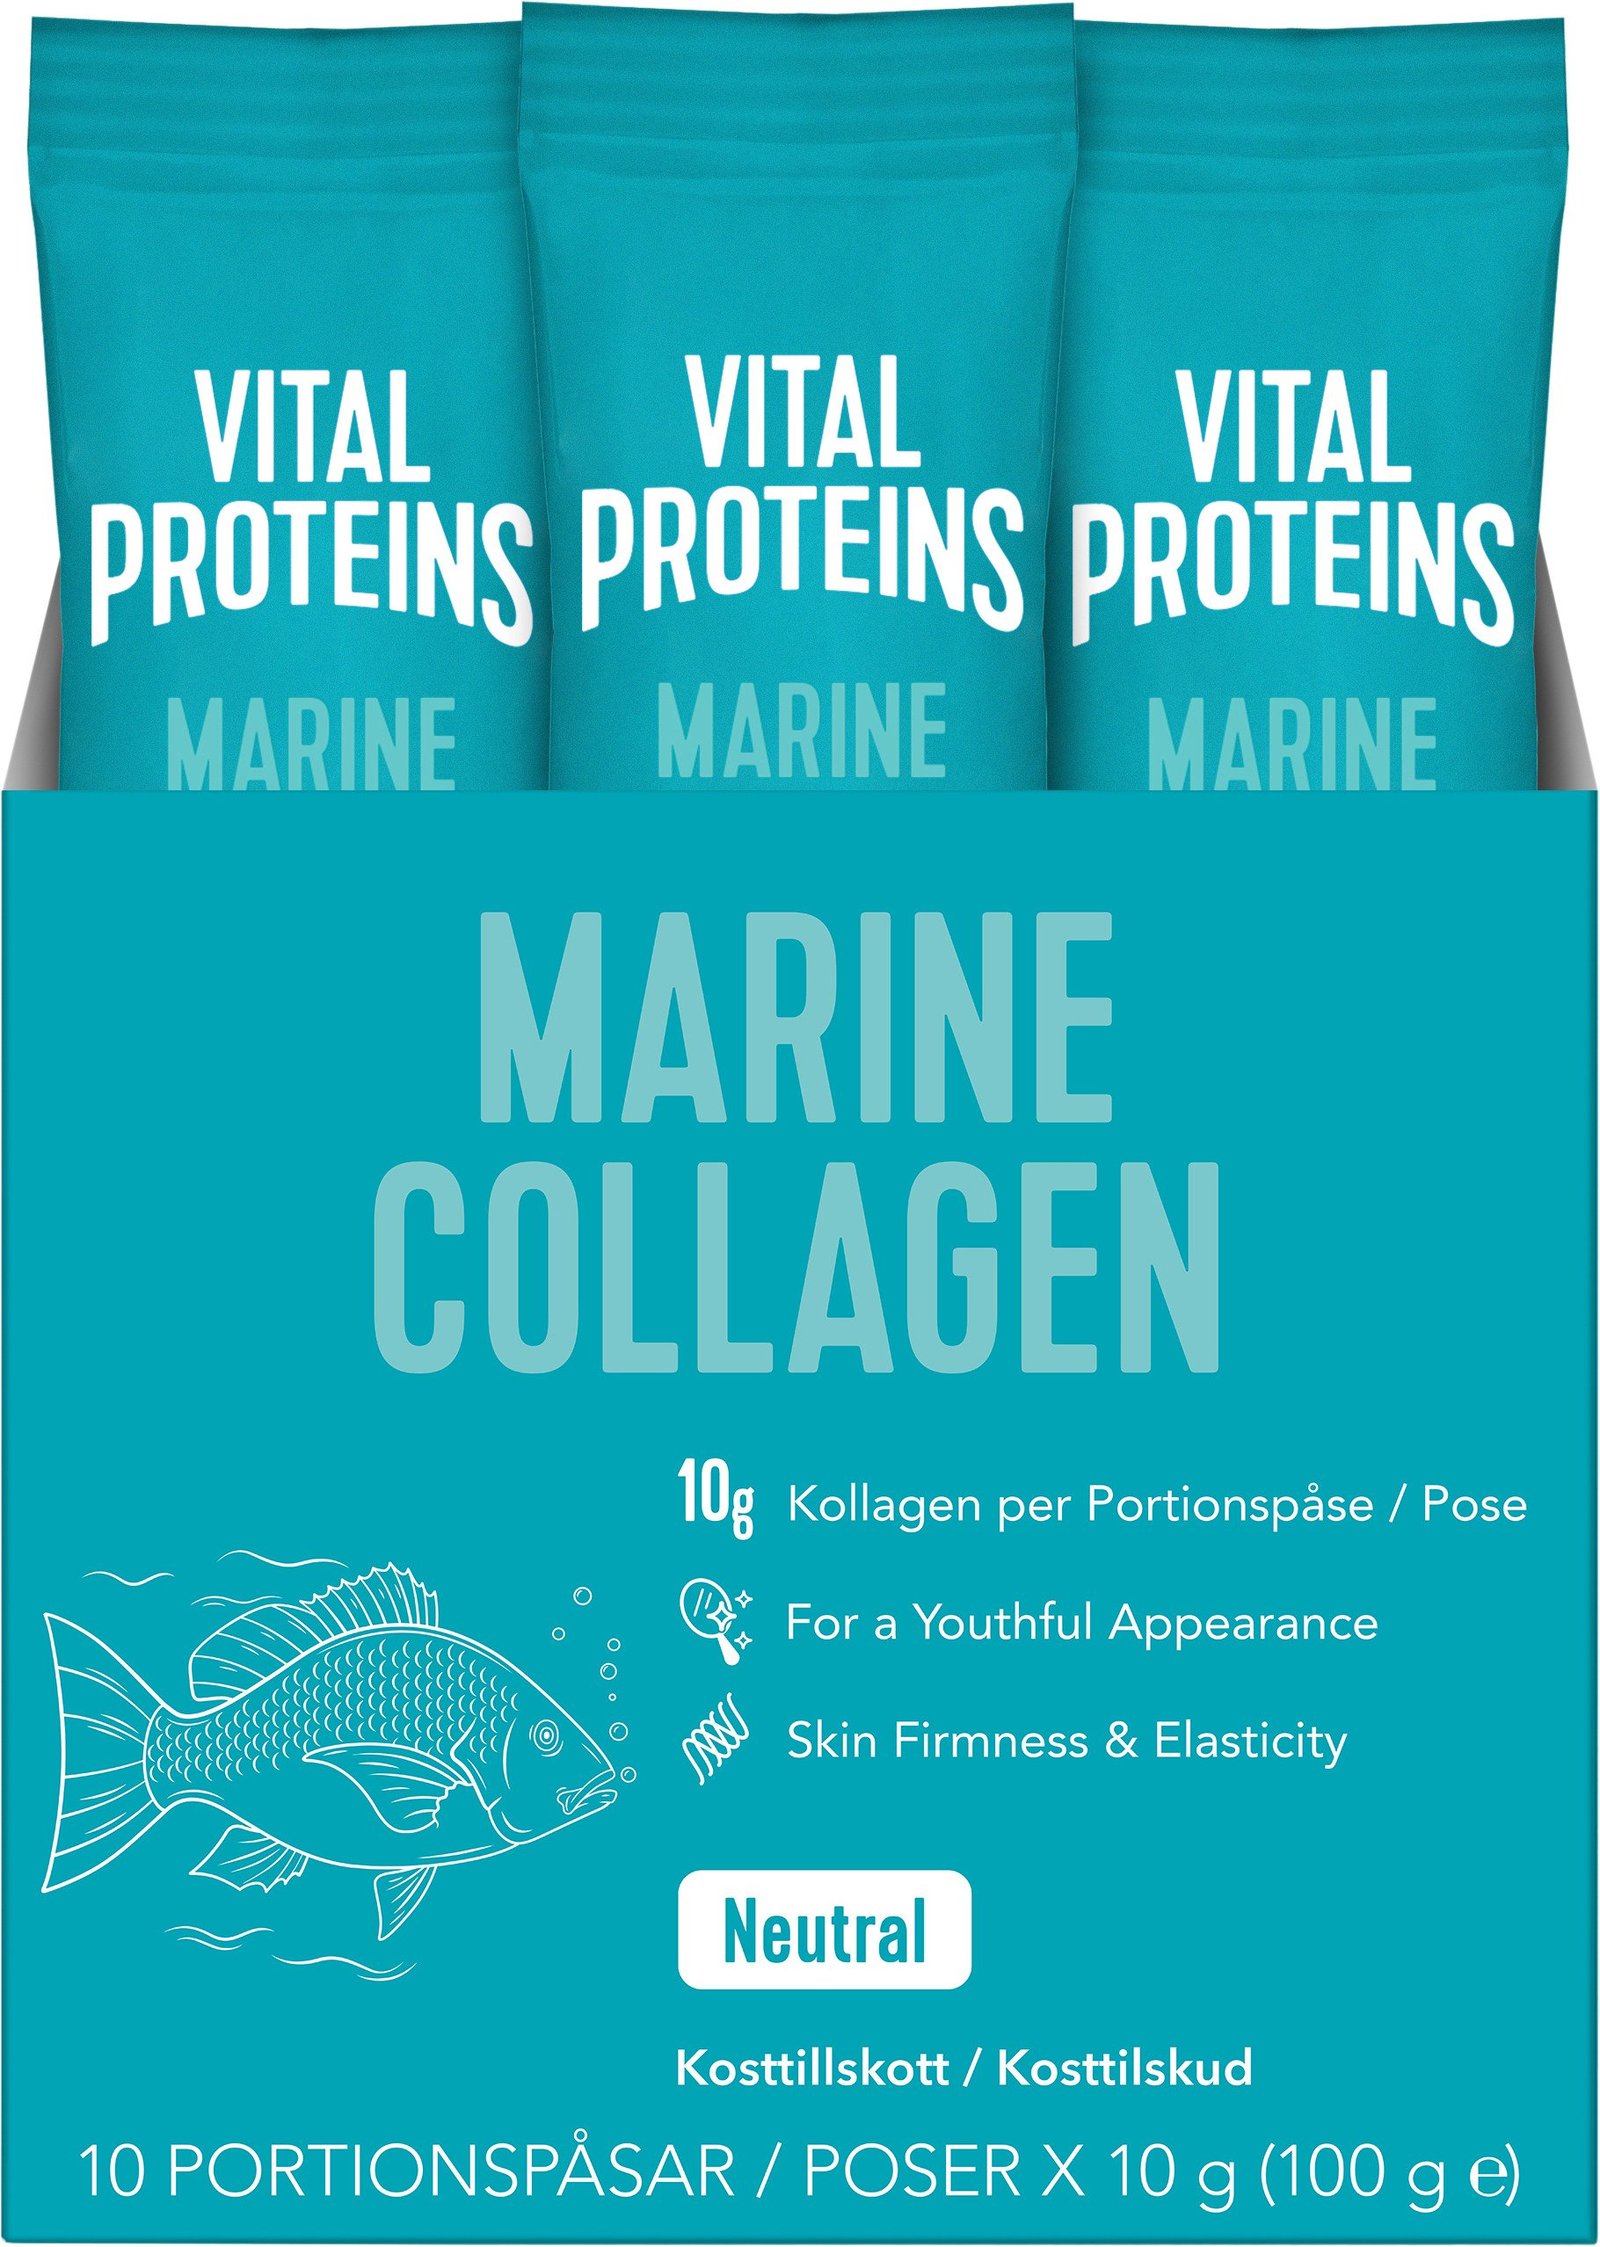 Vital Proteins Marine Collagen Stick Pack 10g x 10 st